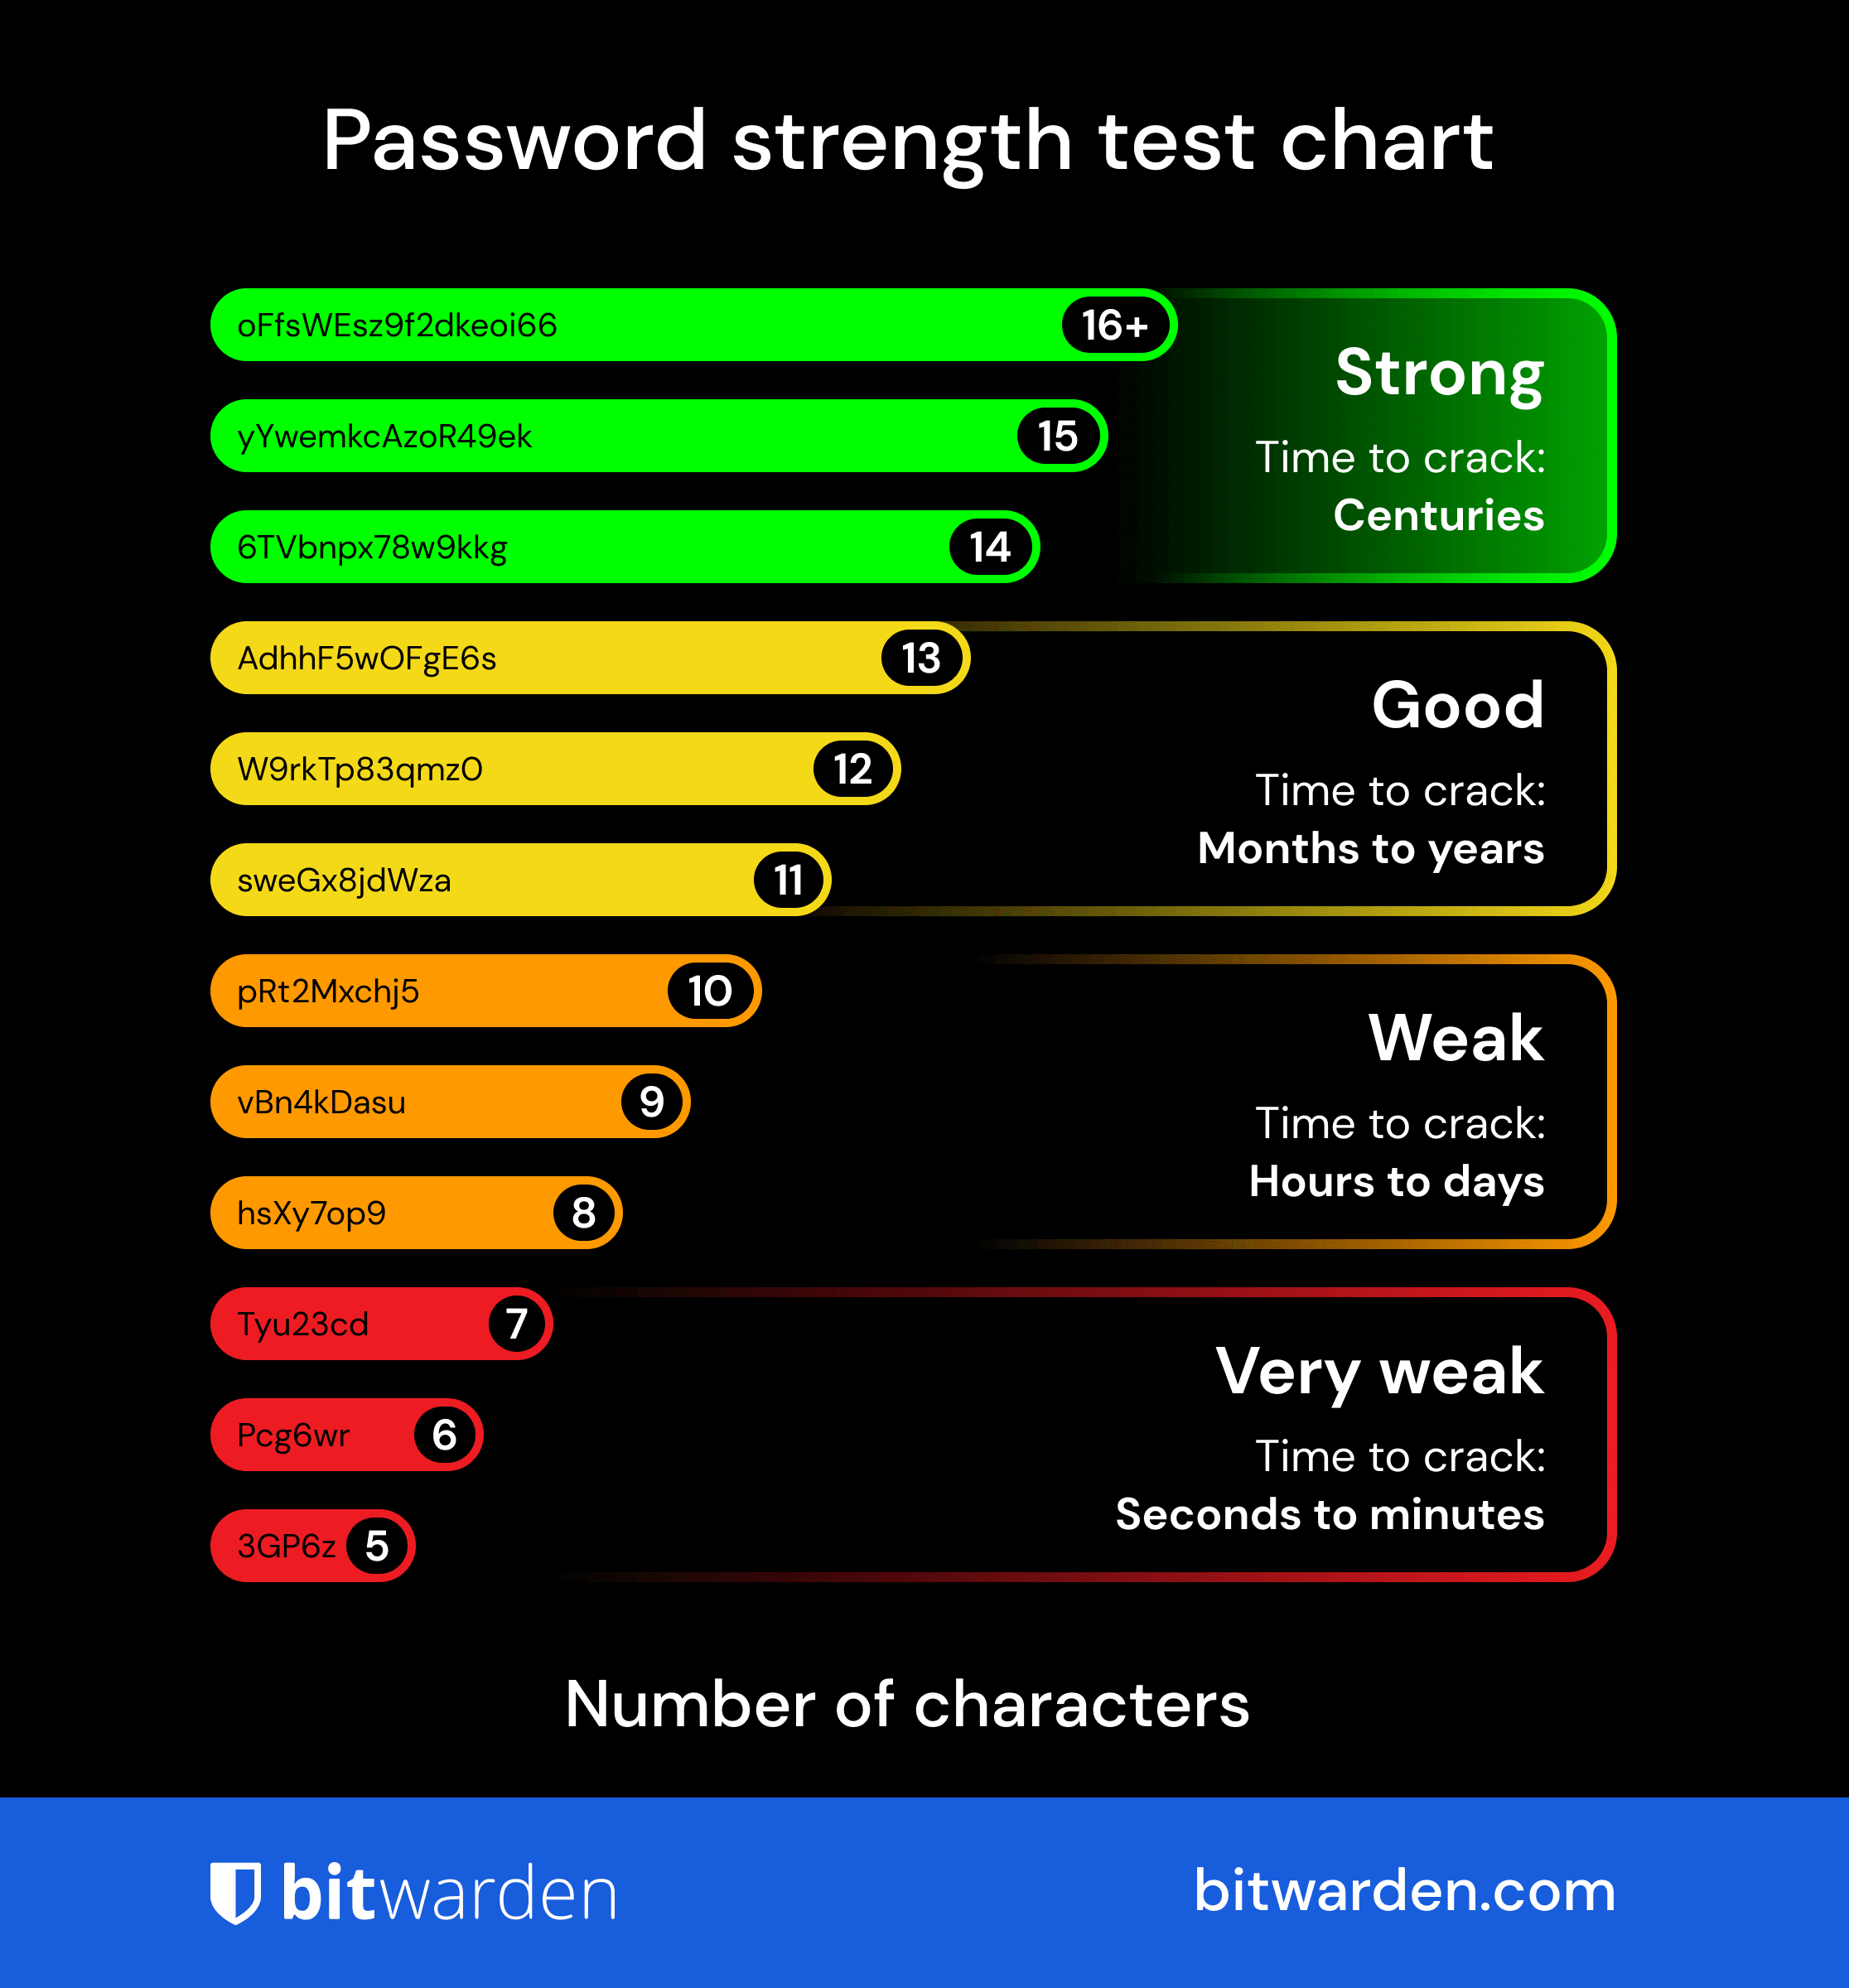 パスワード強度テストチャート - パスワード強度テストチャートを保存し、次回のパスワード決定のガイドとして利用してください。Bitwardenは信頼性の高いパスワード強度の計算のためにzxcvbnツールを使用します。